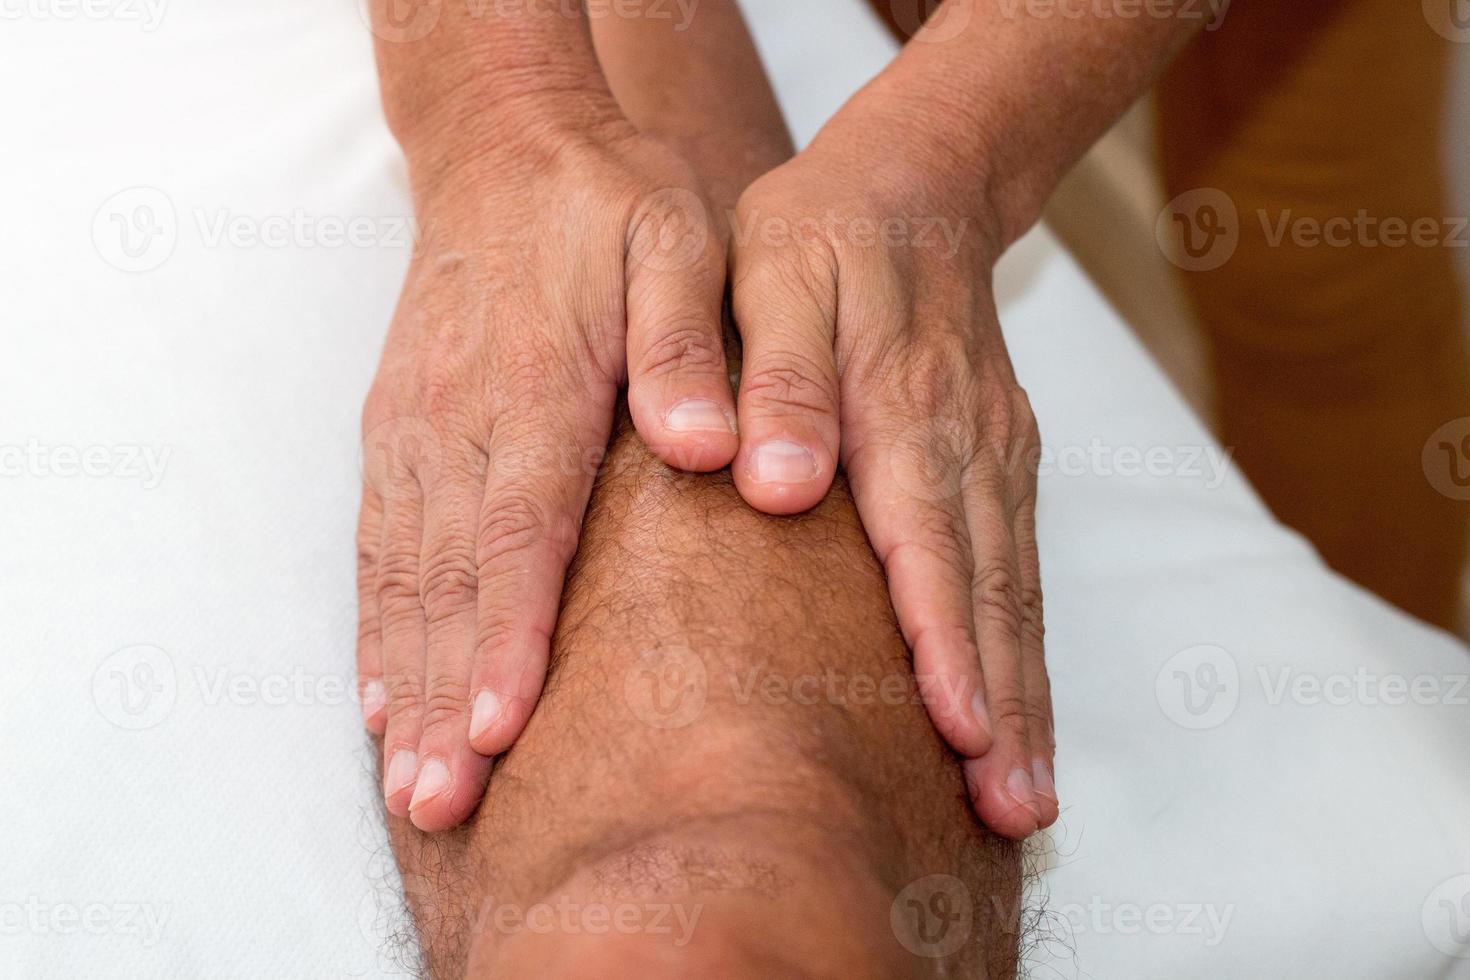 Massagetherapeut massiert das Bein eines Mannes unterhalb des Knies foto